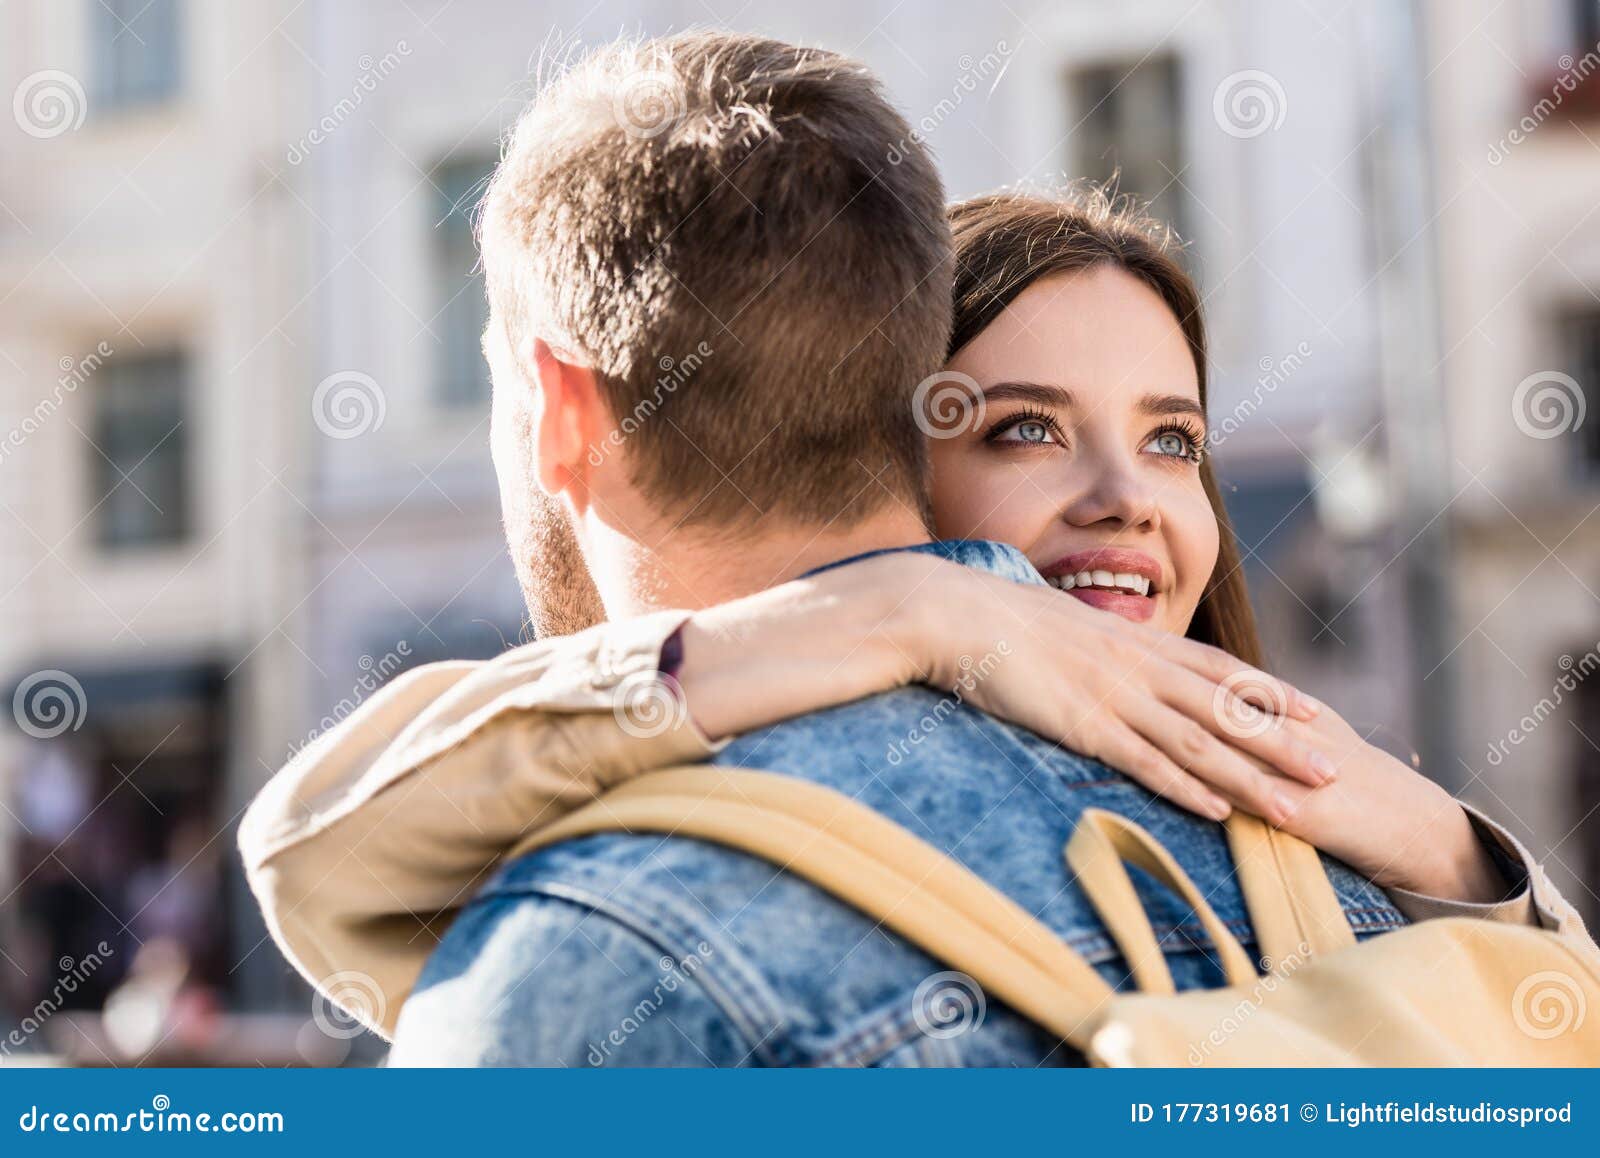 男女相爱抱在一起室外树叶树枝图片下载 - 觅知网